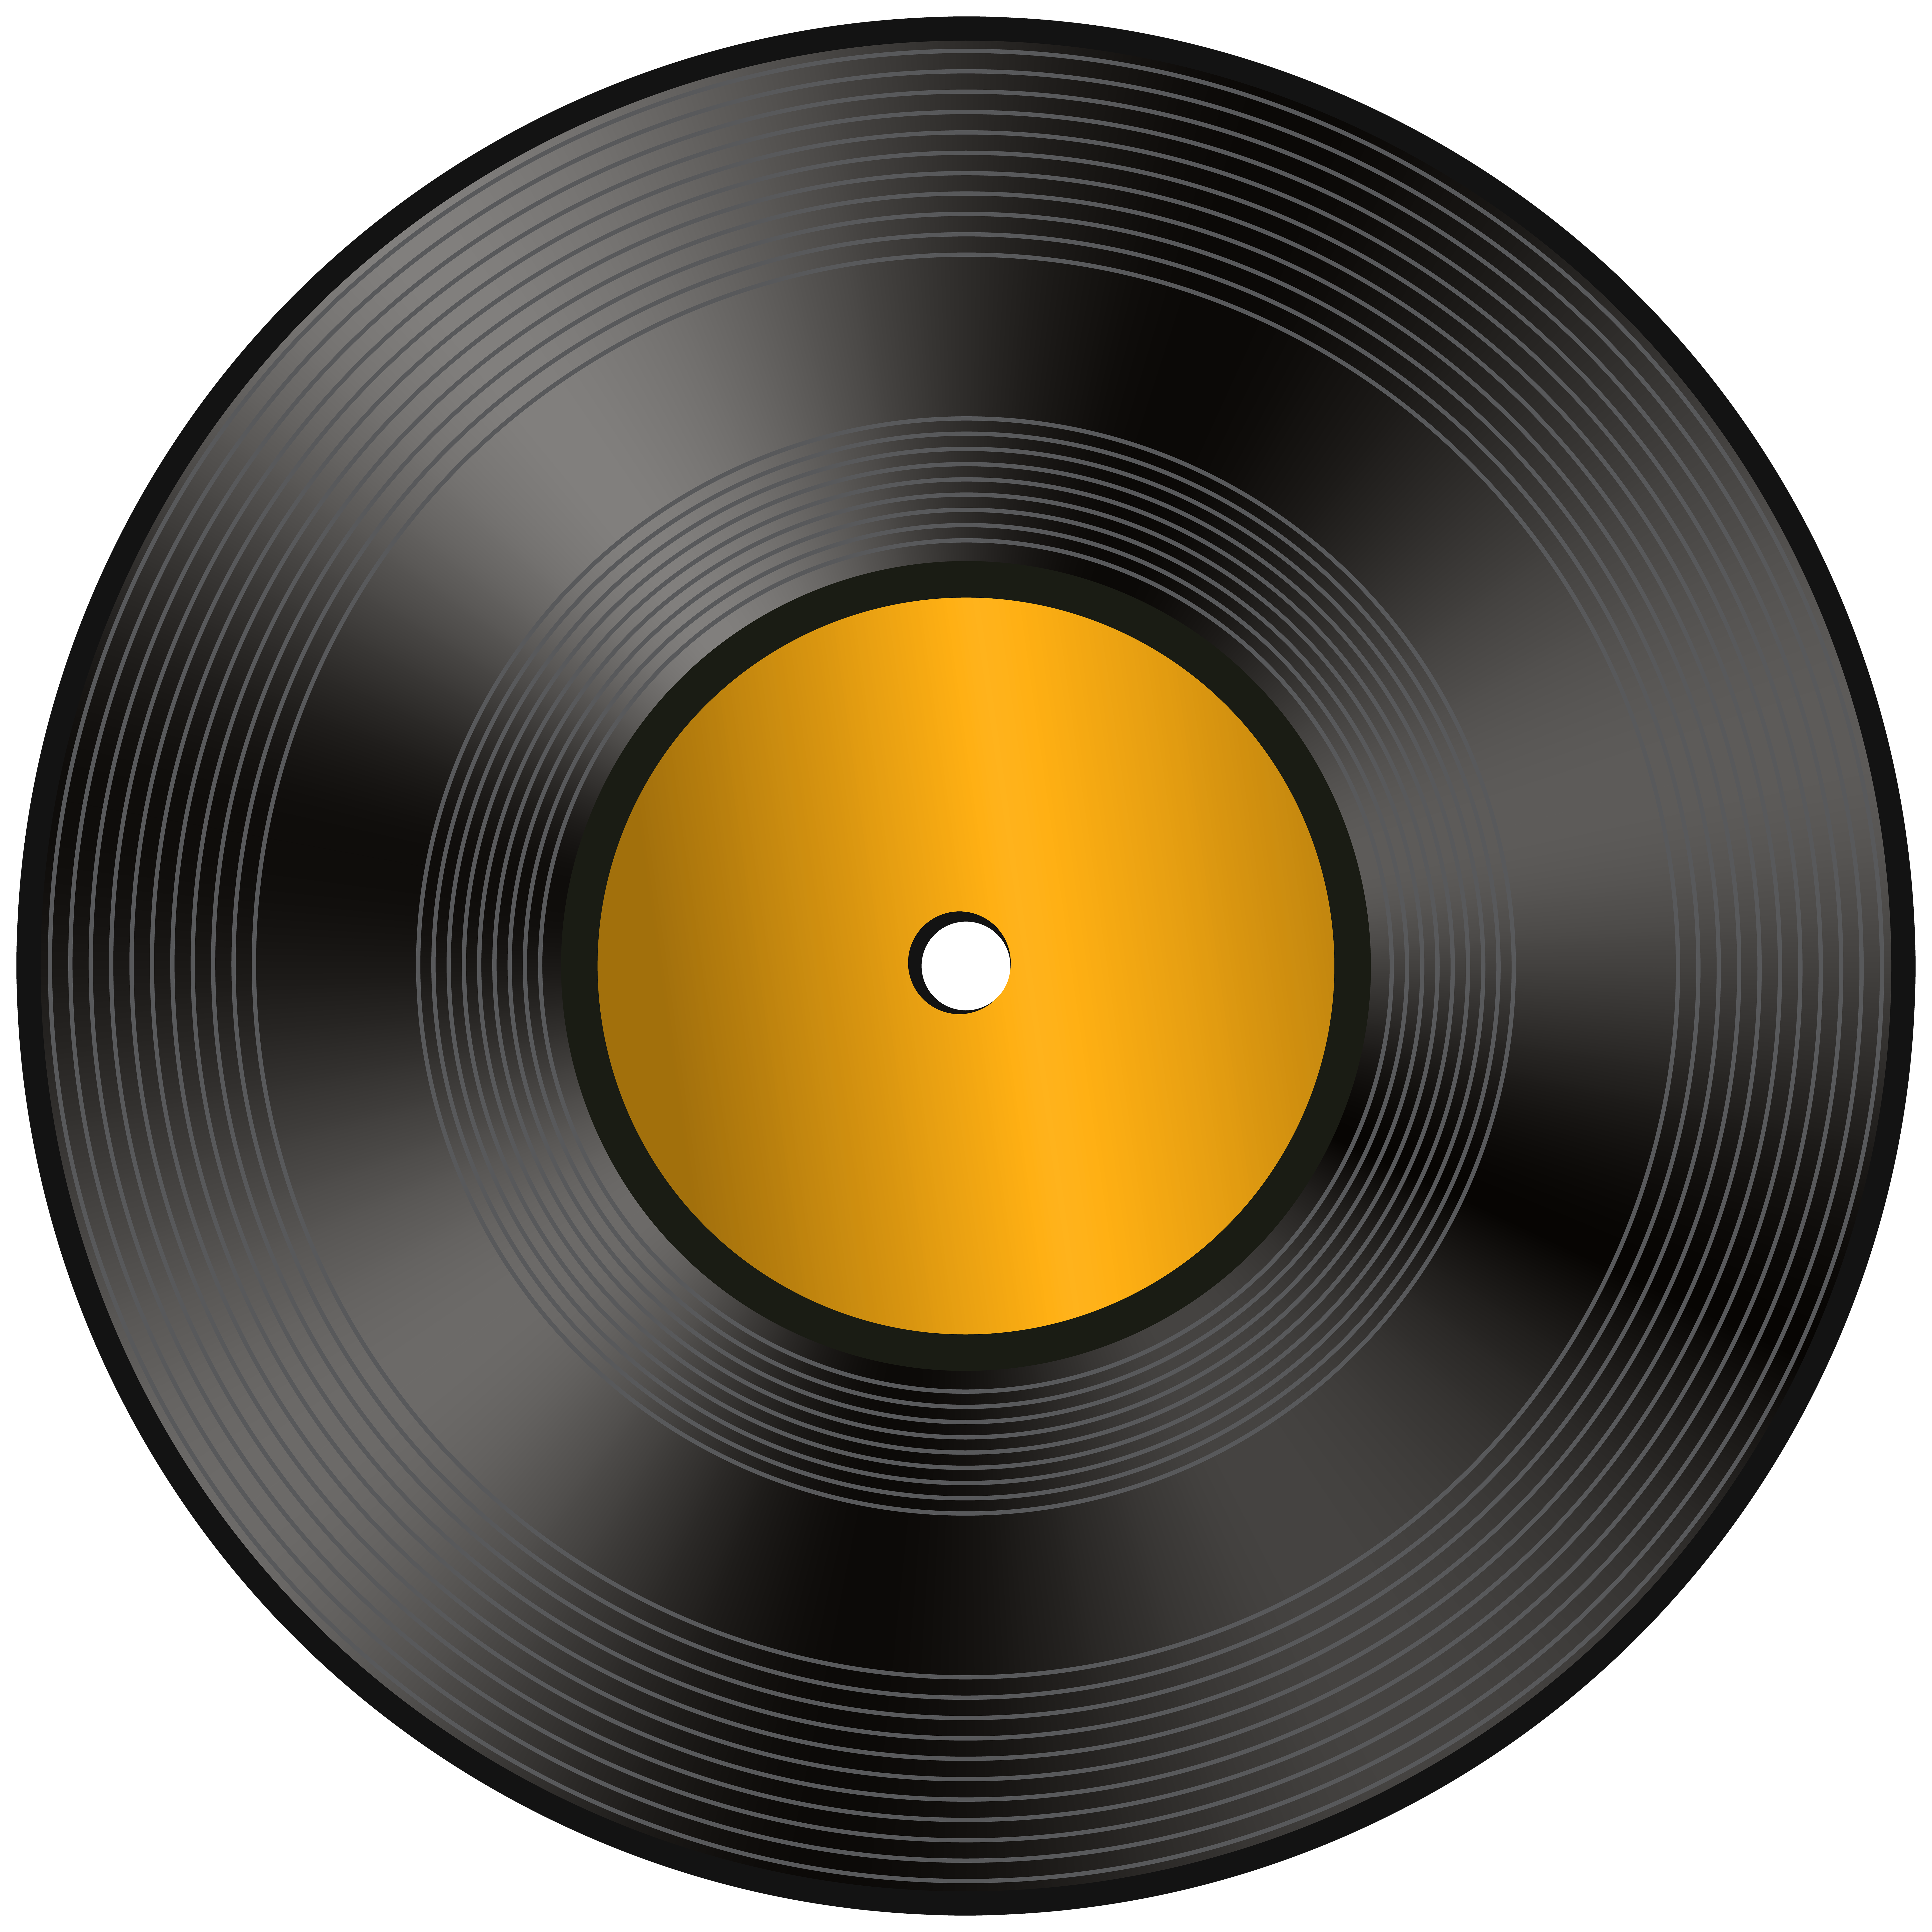 Vinyl Record PNG Clip Art Image.